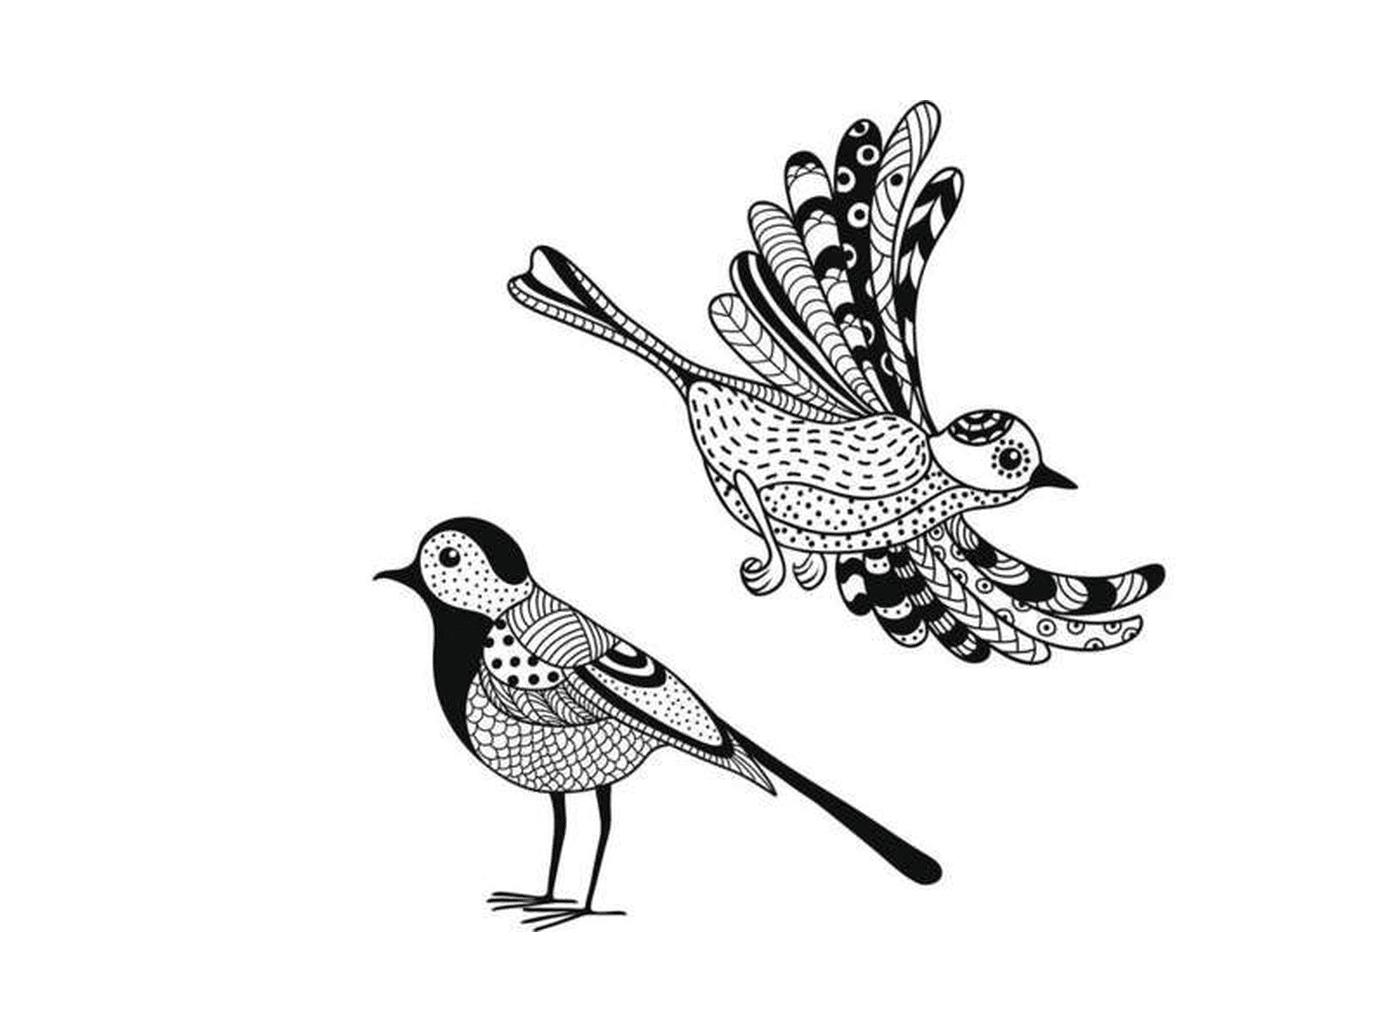  zwei schwarz-weiße Zeichnungen eines Vogels 